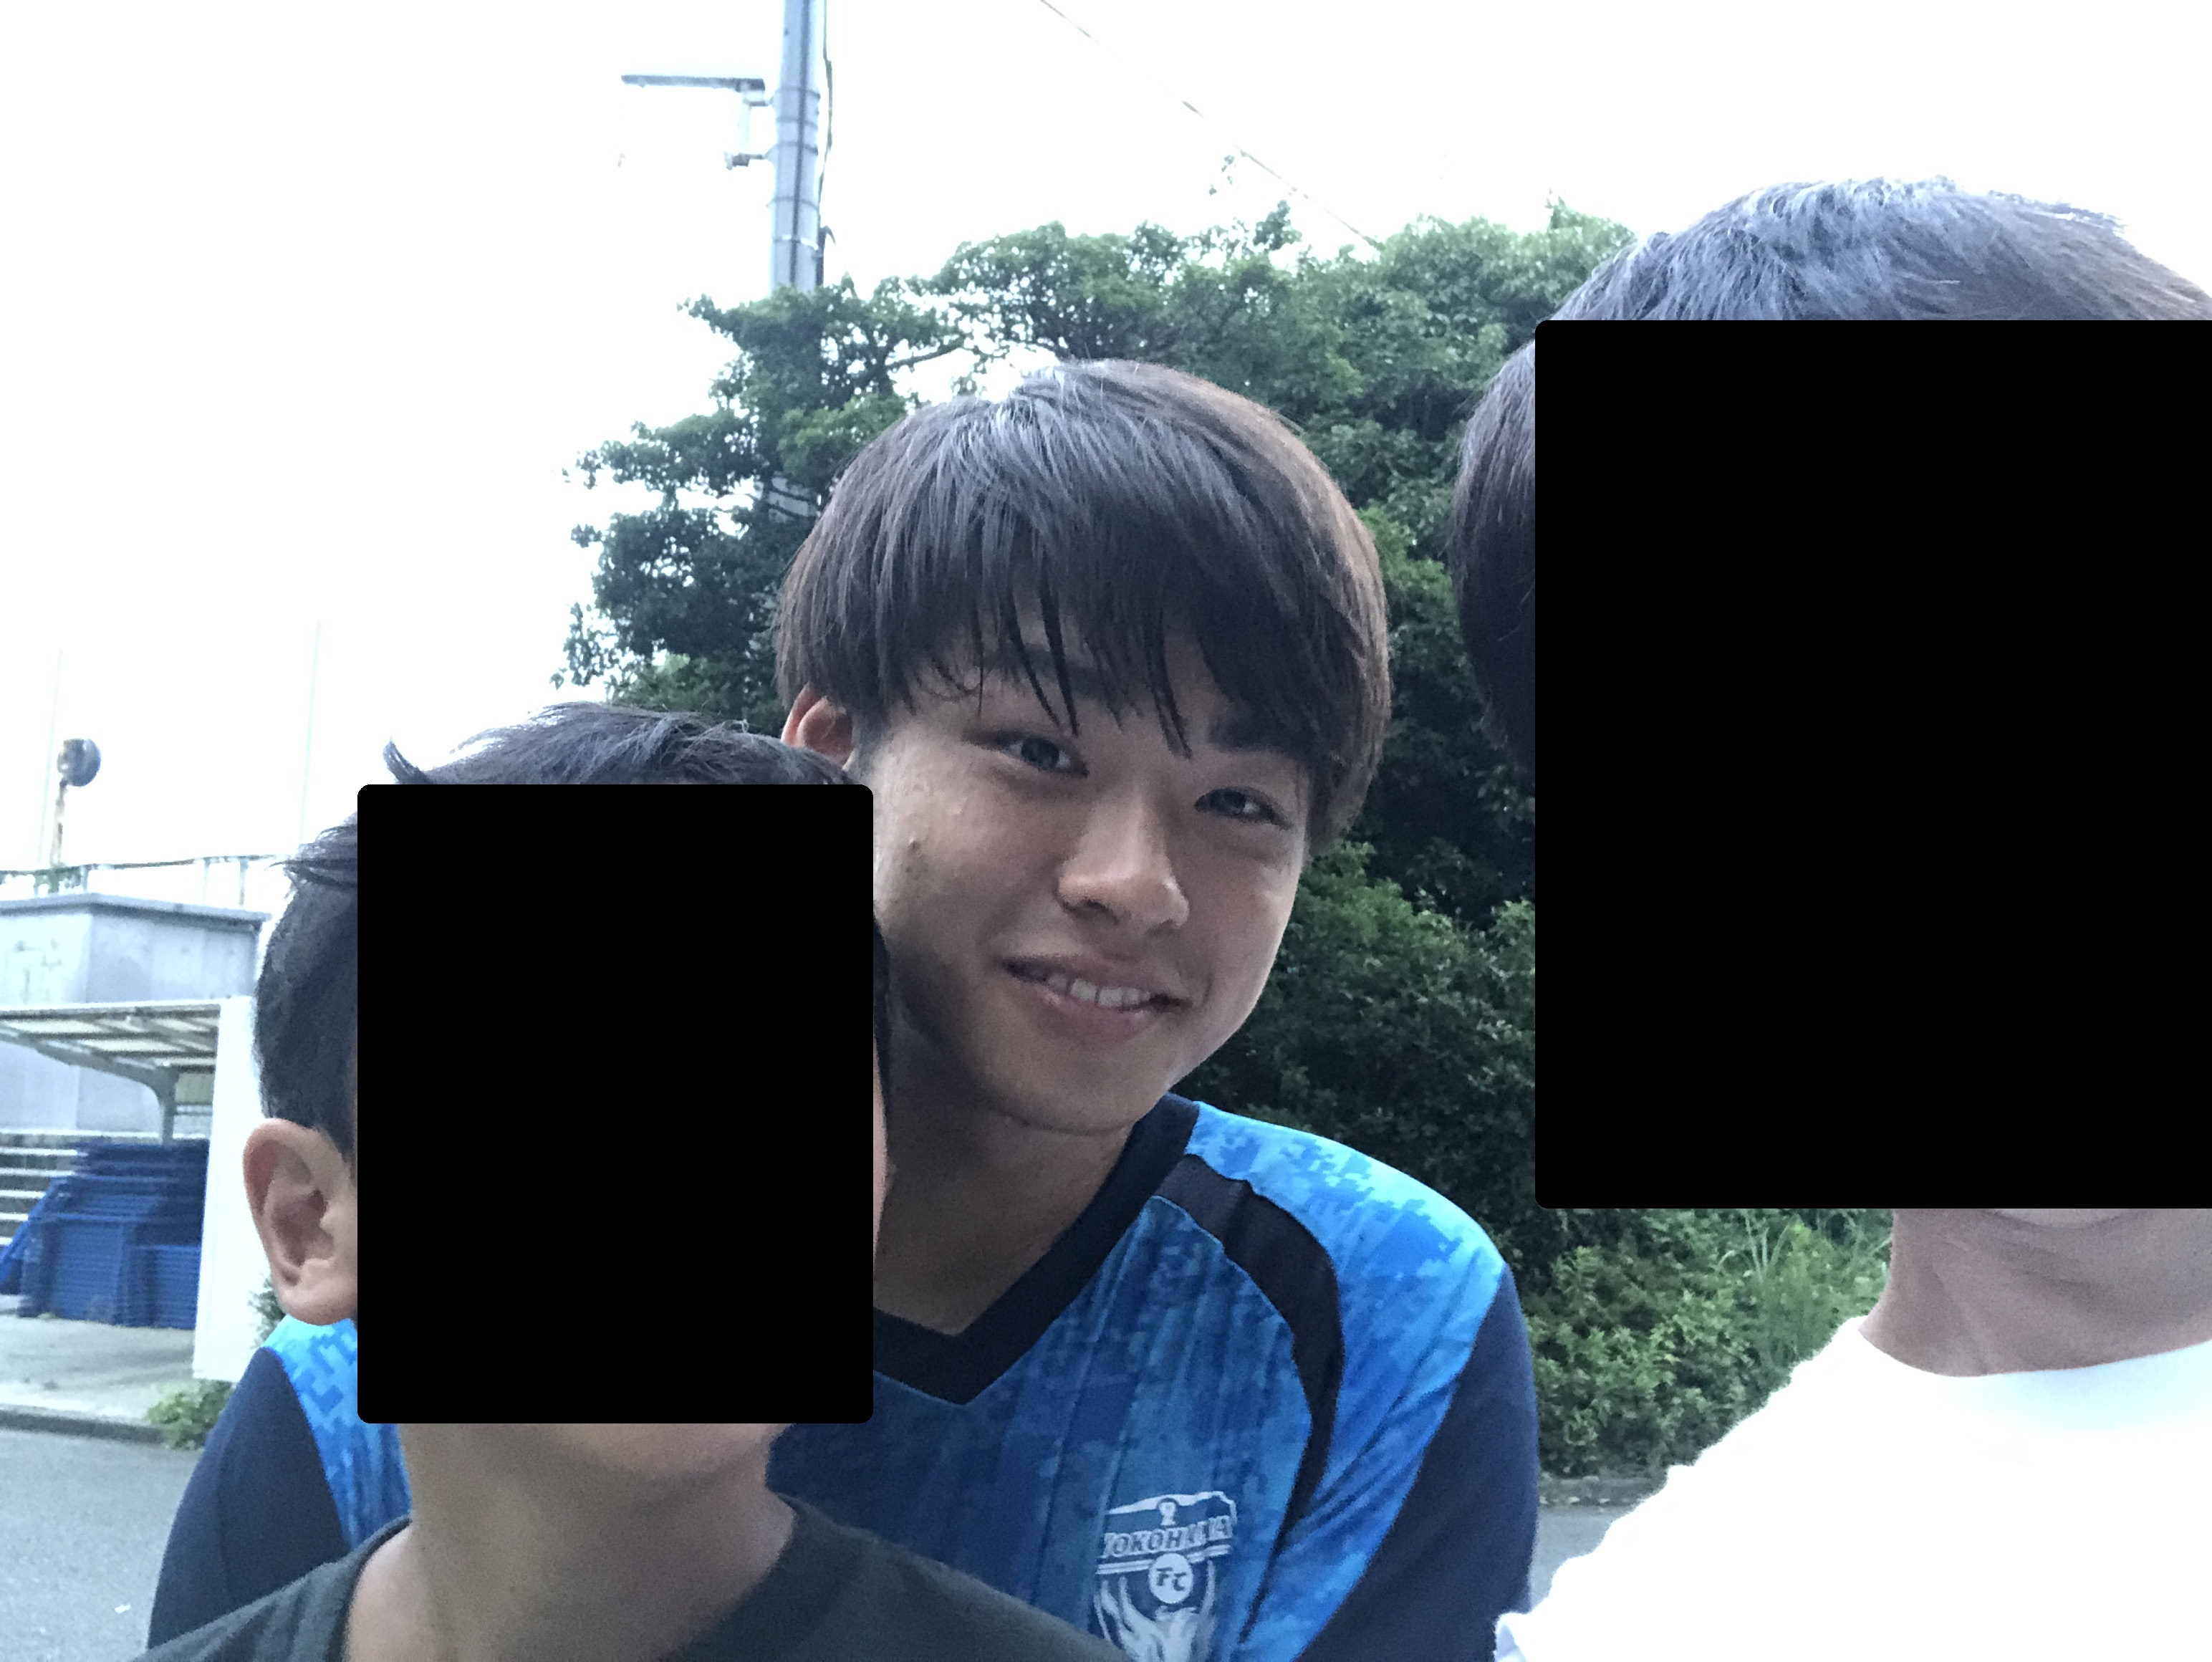 カズや中村俊輔にサインをもらいに横浜fcの公開練習場に行ってみたらトラブルと感謝しかなかった話 サッカーでいつもベンチの子供の親が本音で語る物語